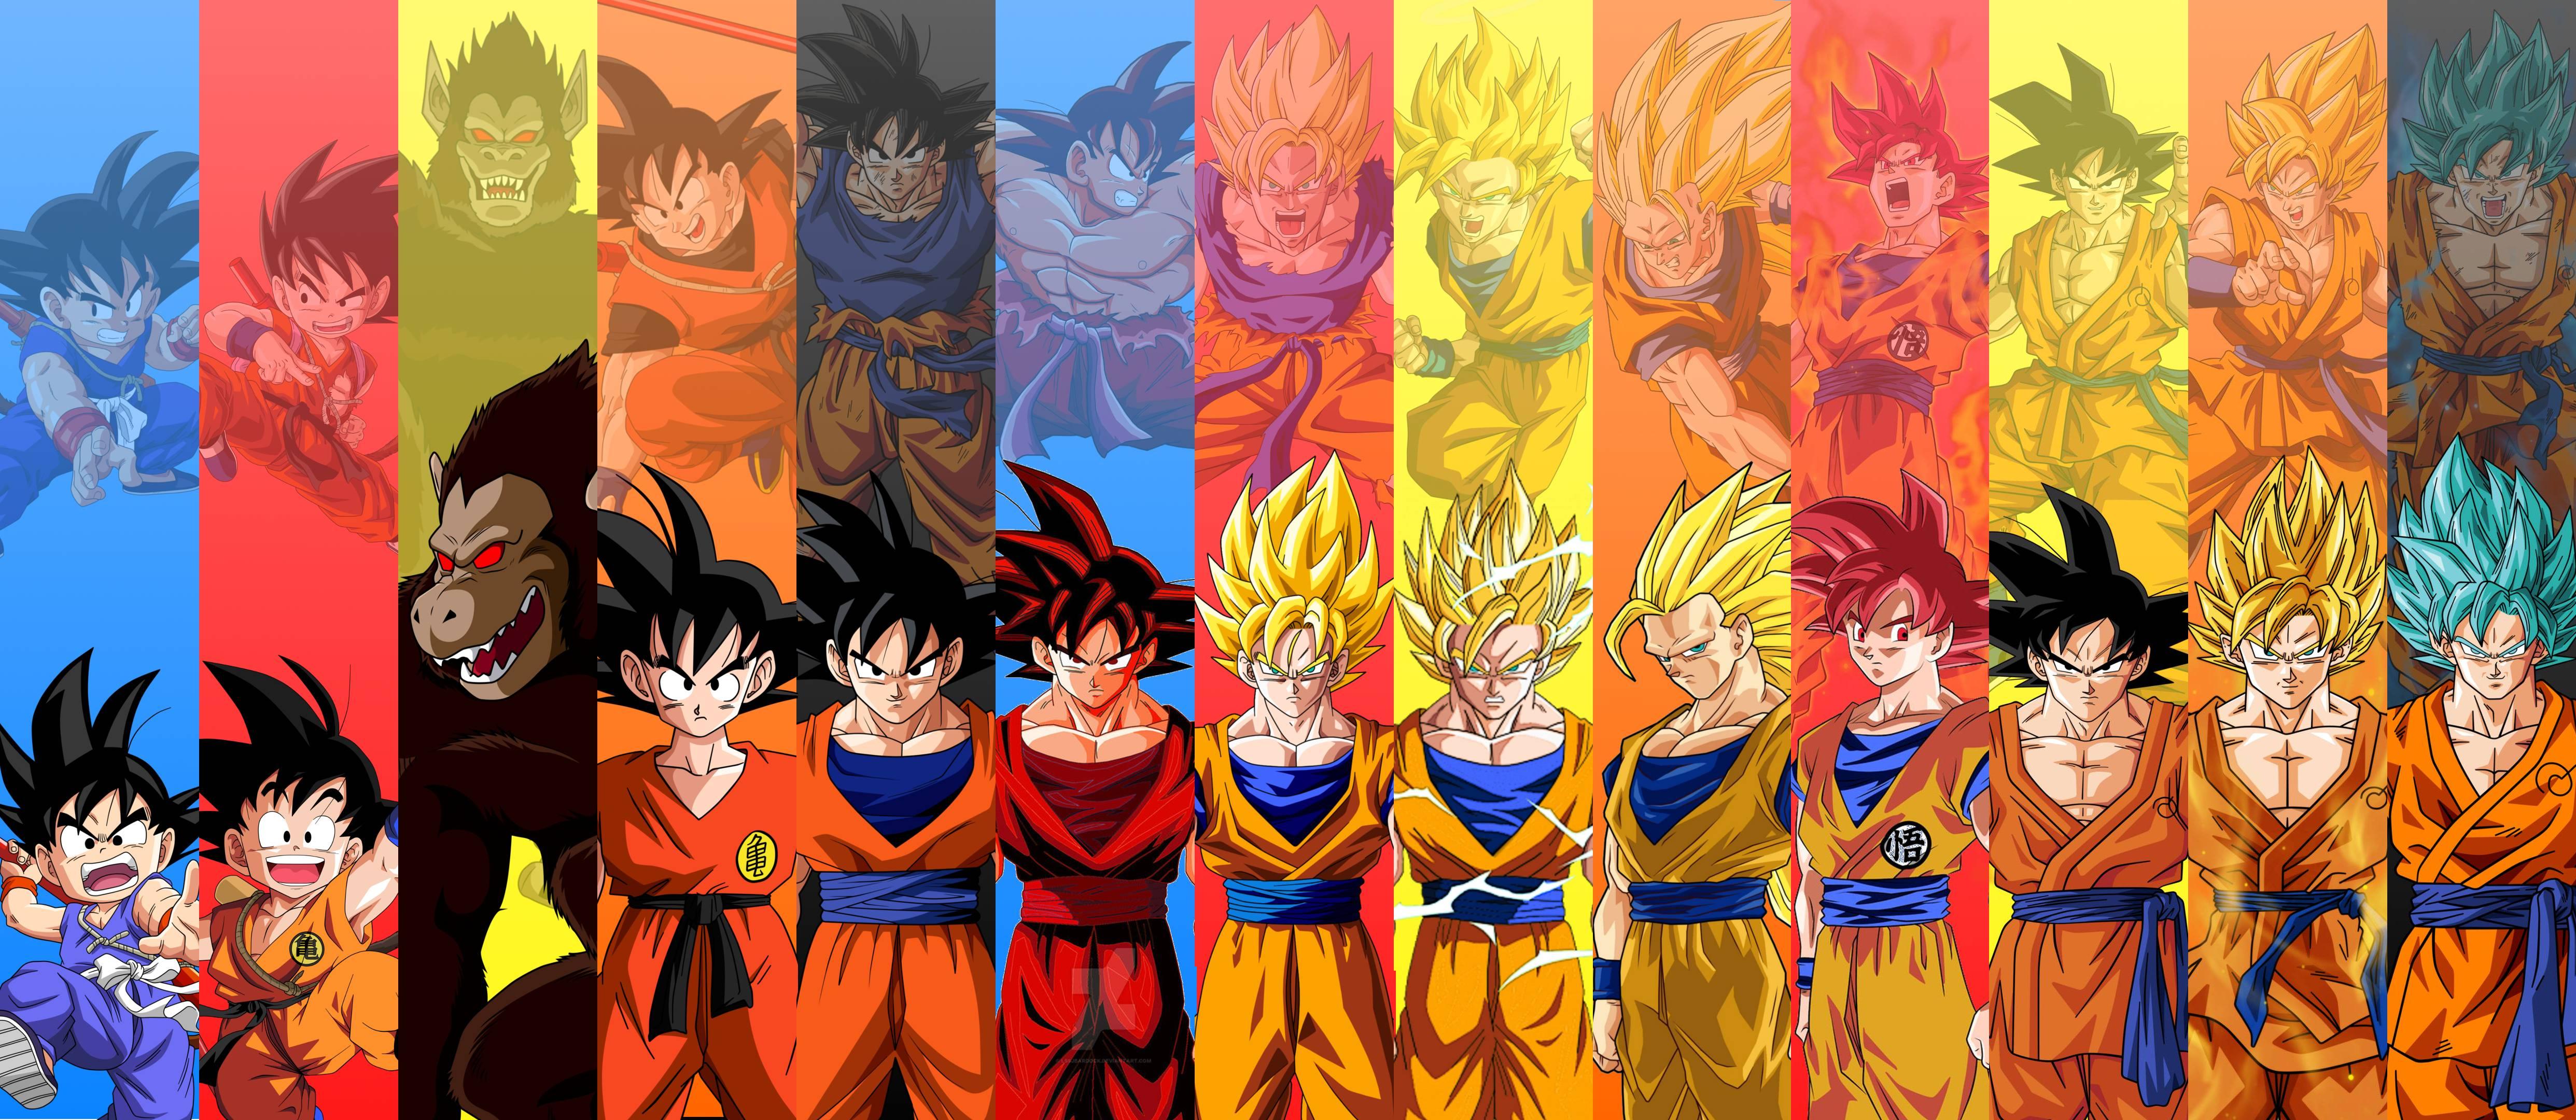 Goku Super Saiyan Wallpaper Free Goku Super Saiyan